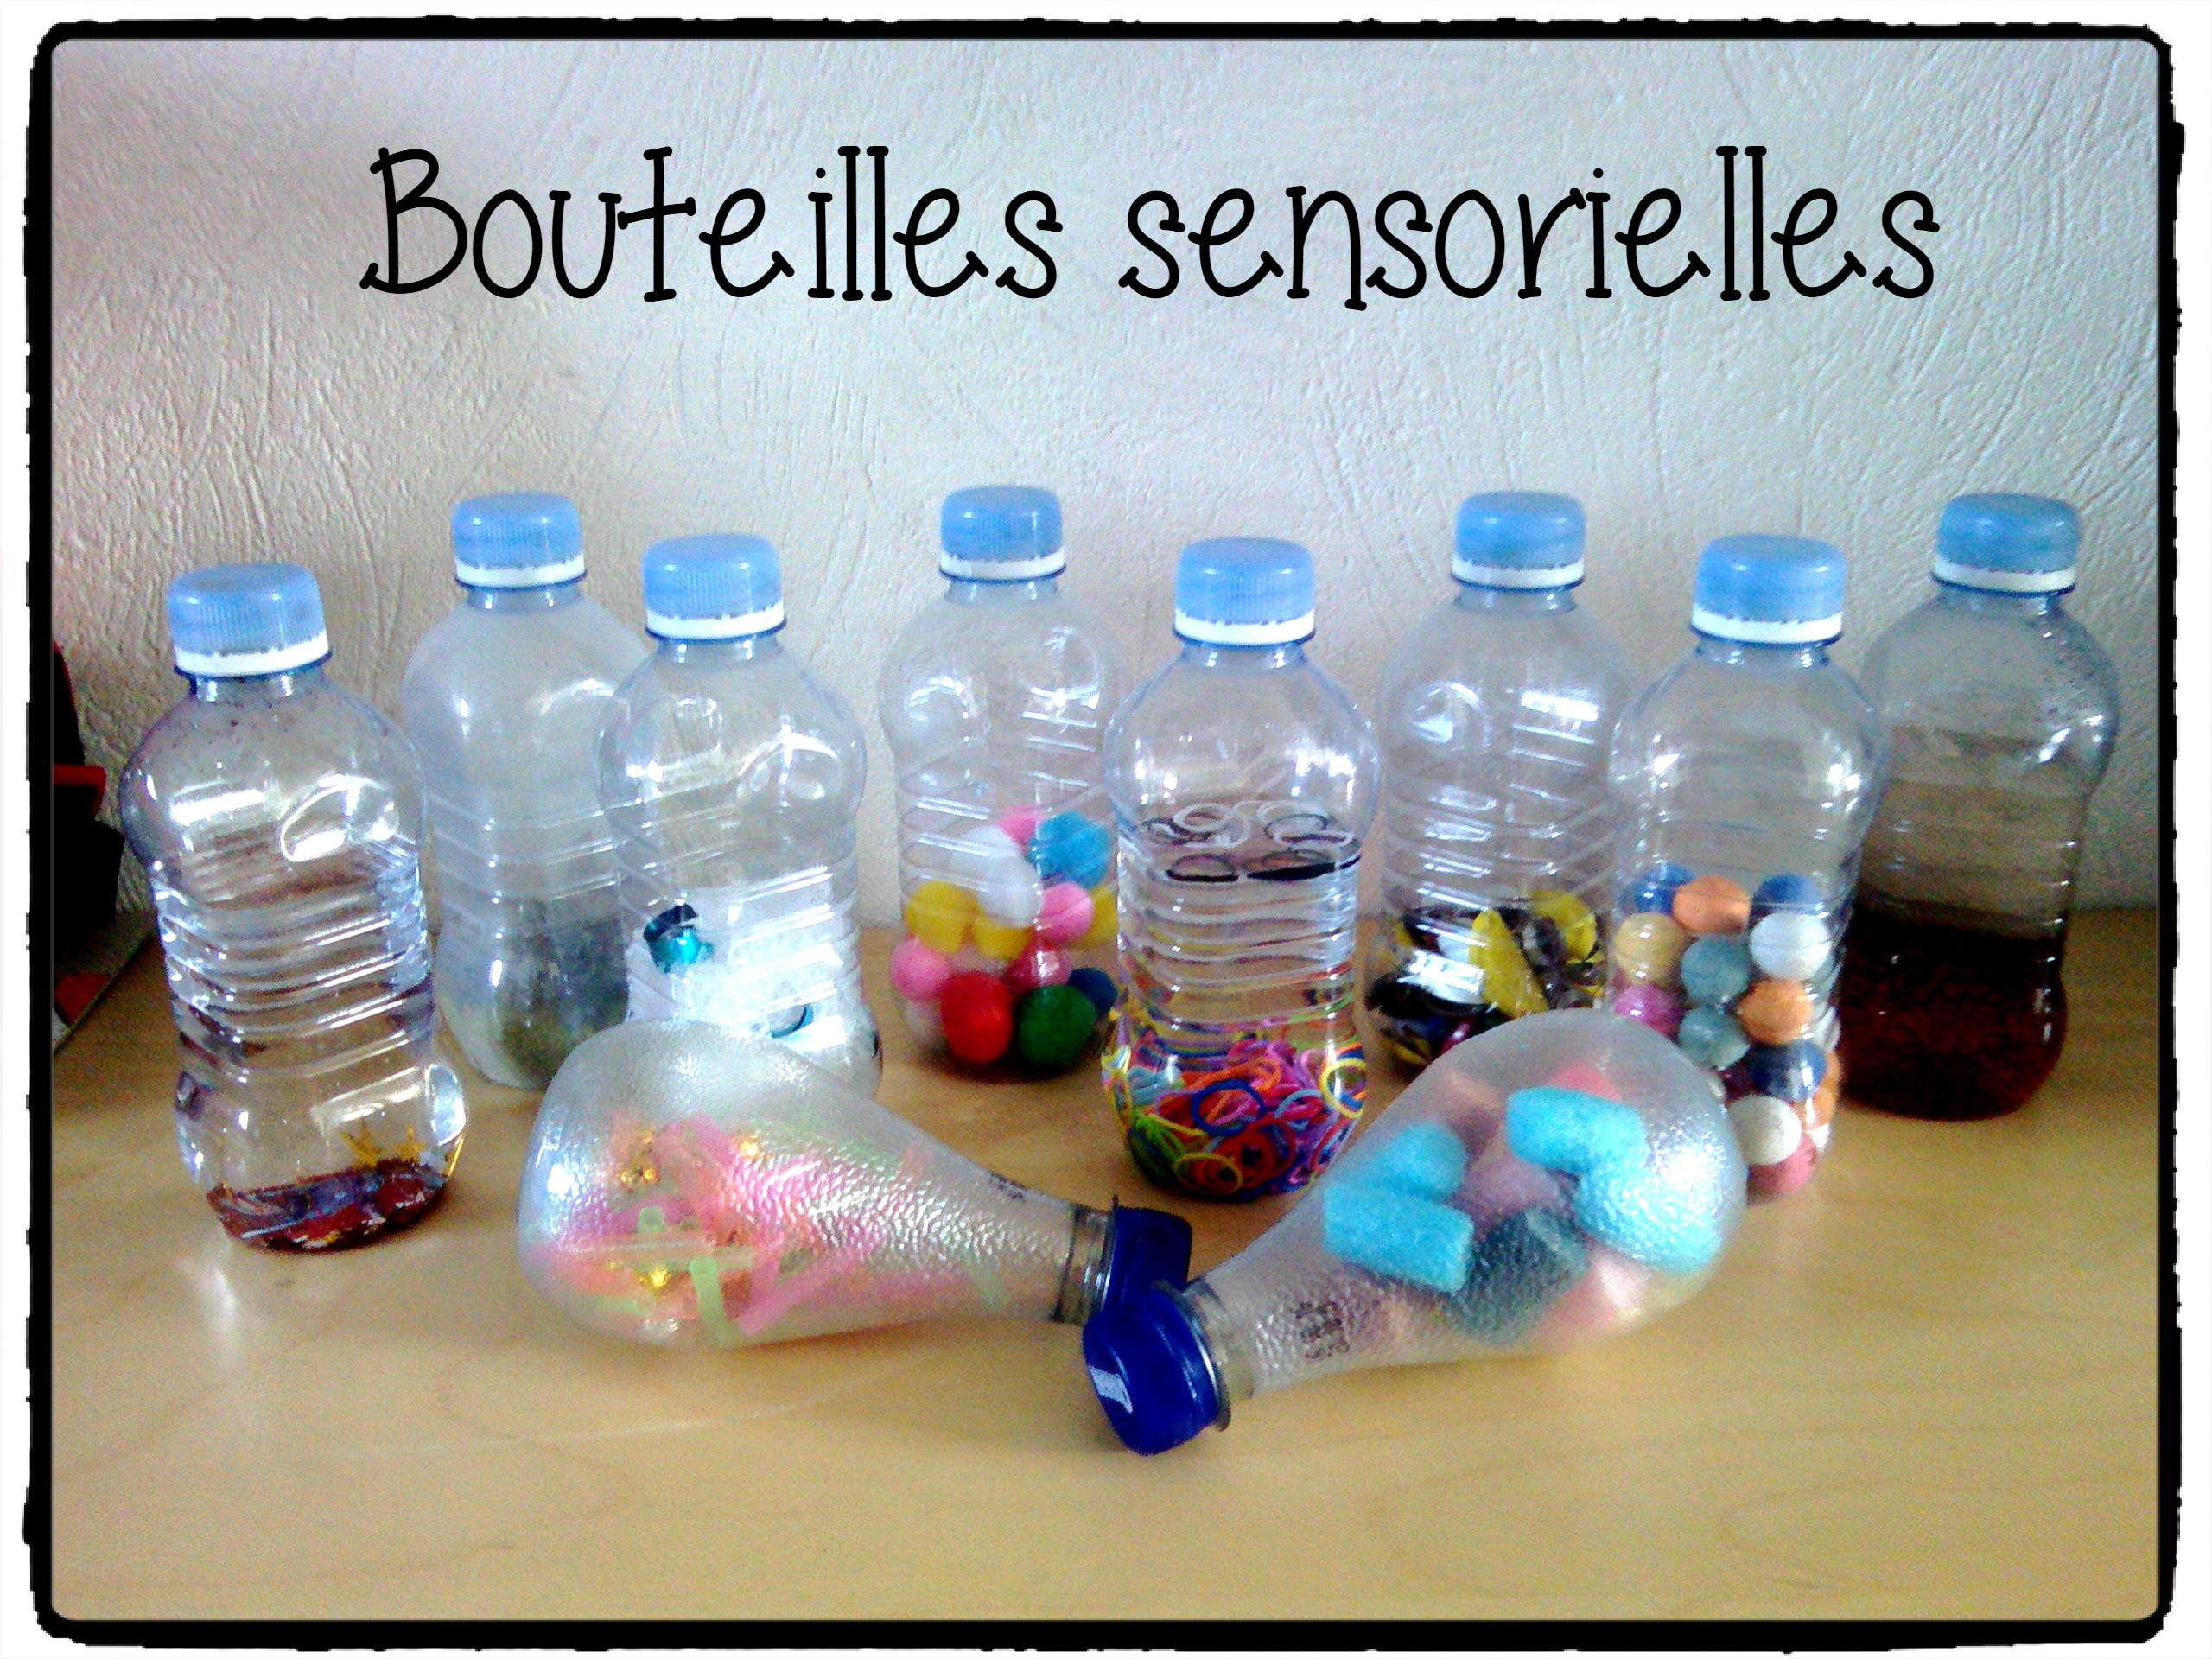 Les bouteilles sensorielles